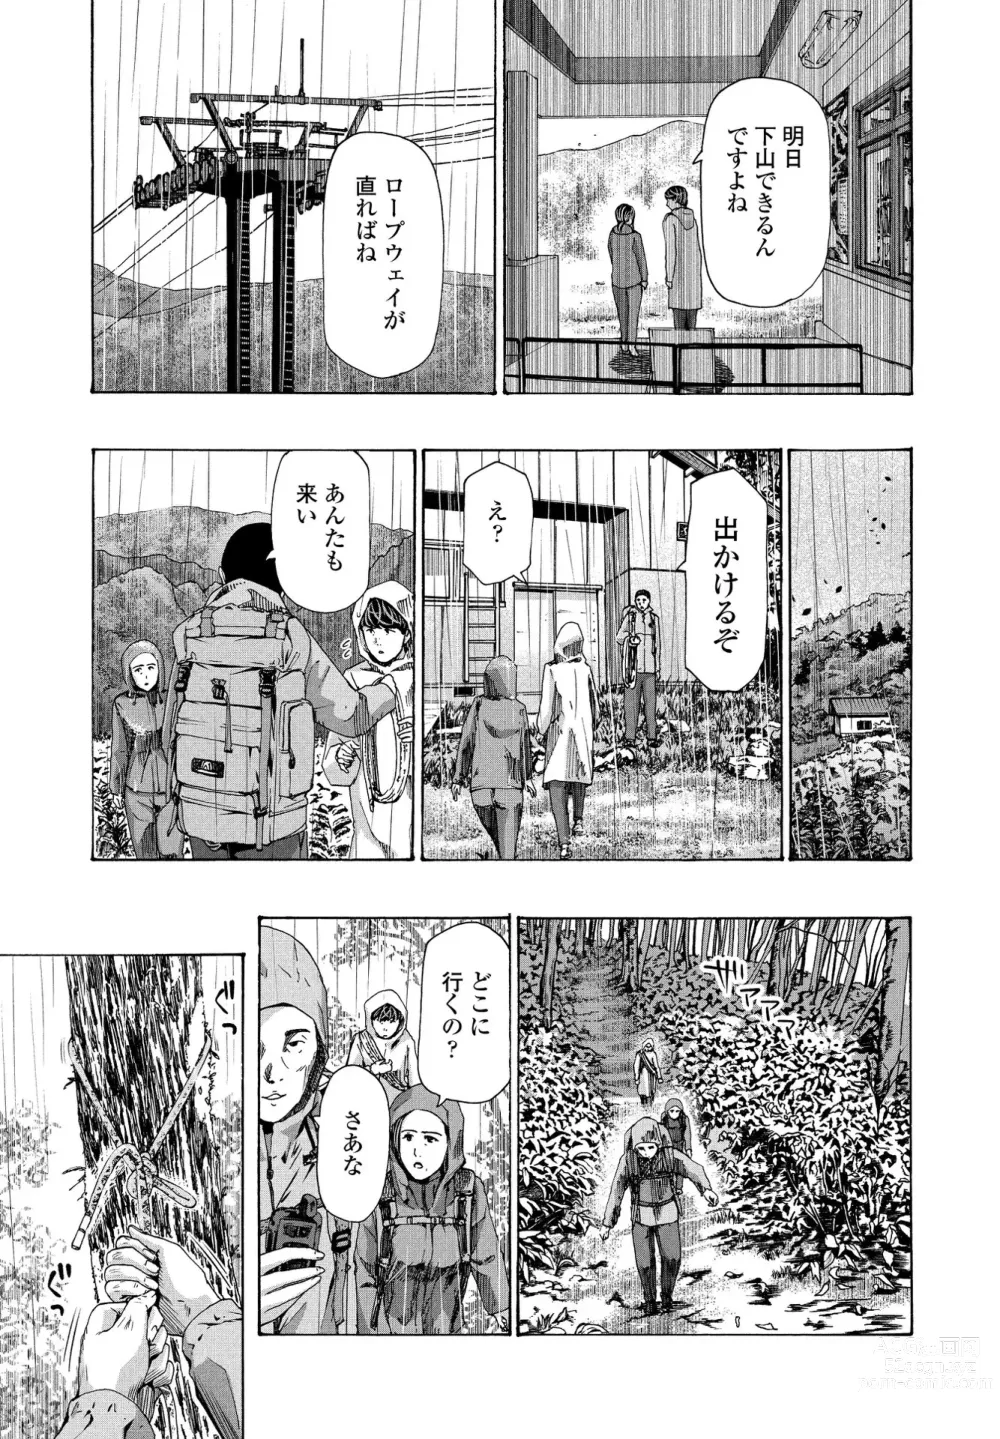 Page 23 of manga Hinangoya nite